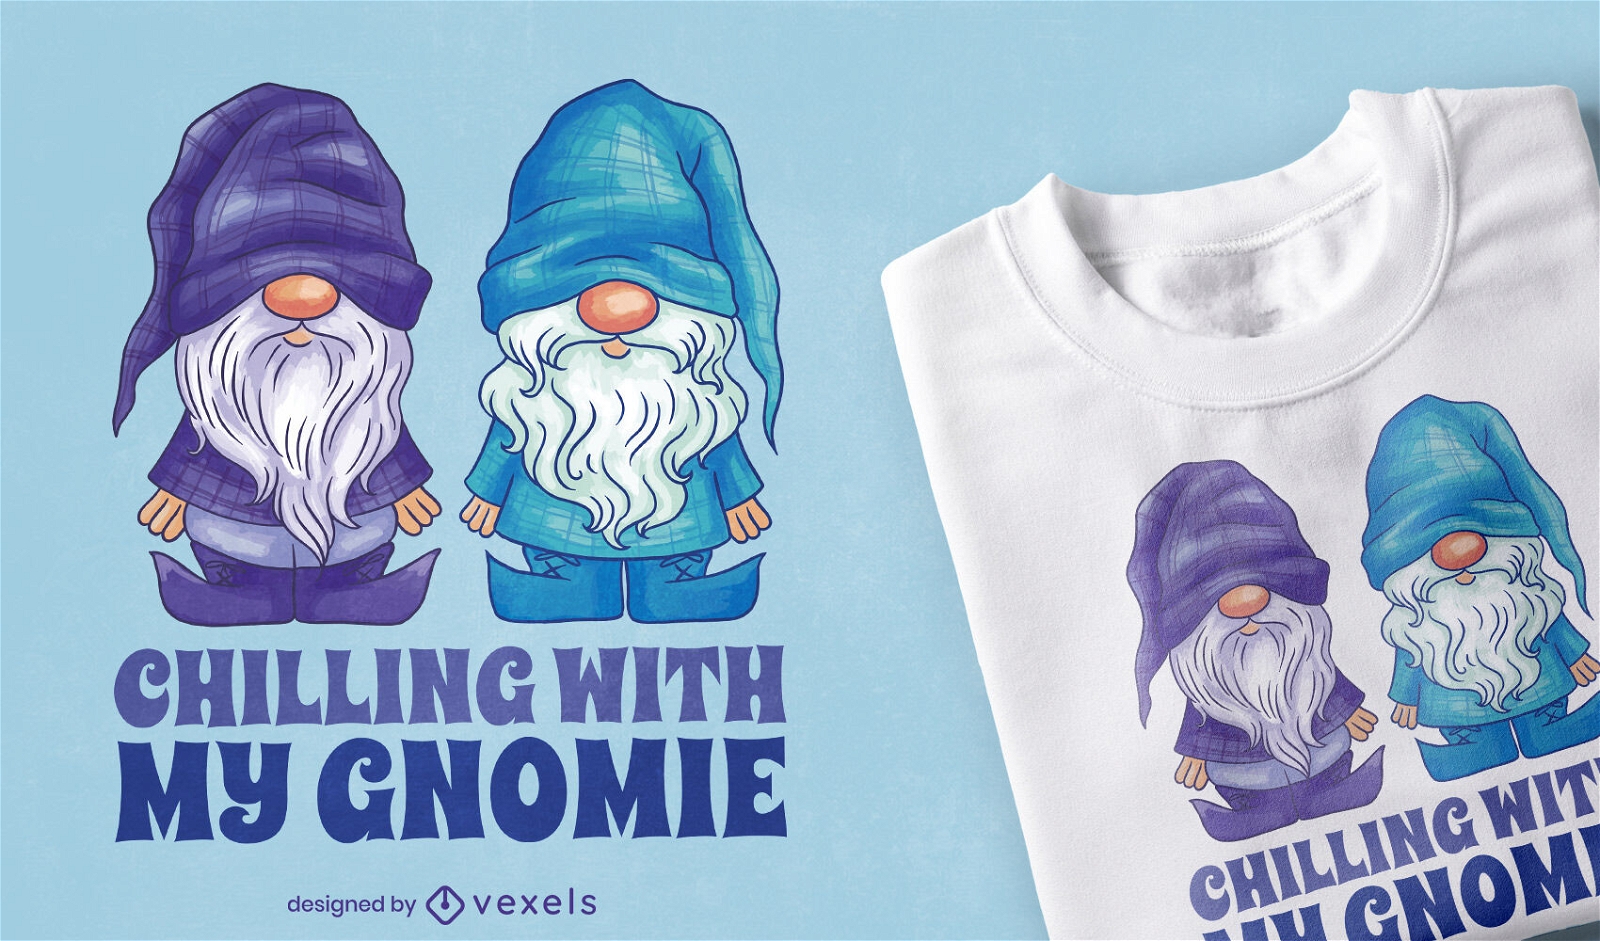 Chillen mit meinem Gnome T-Shirt Design